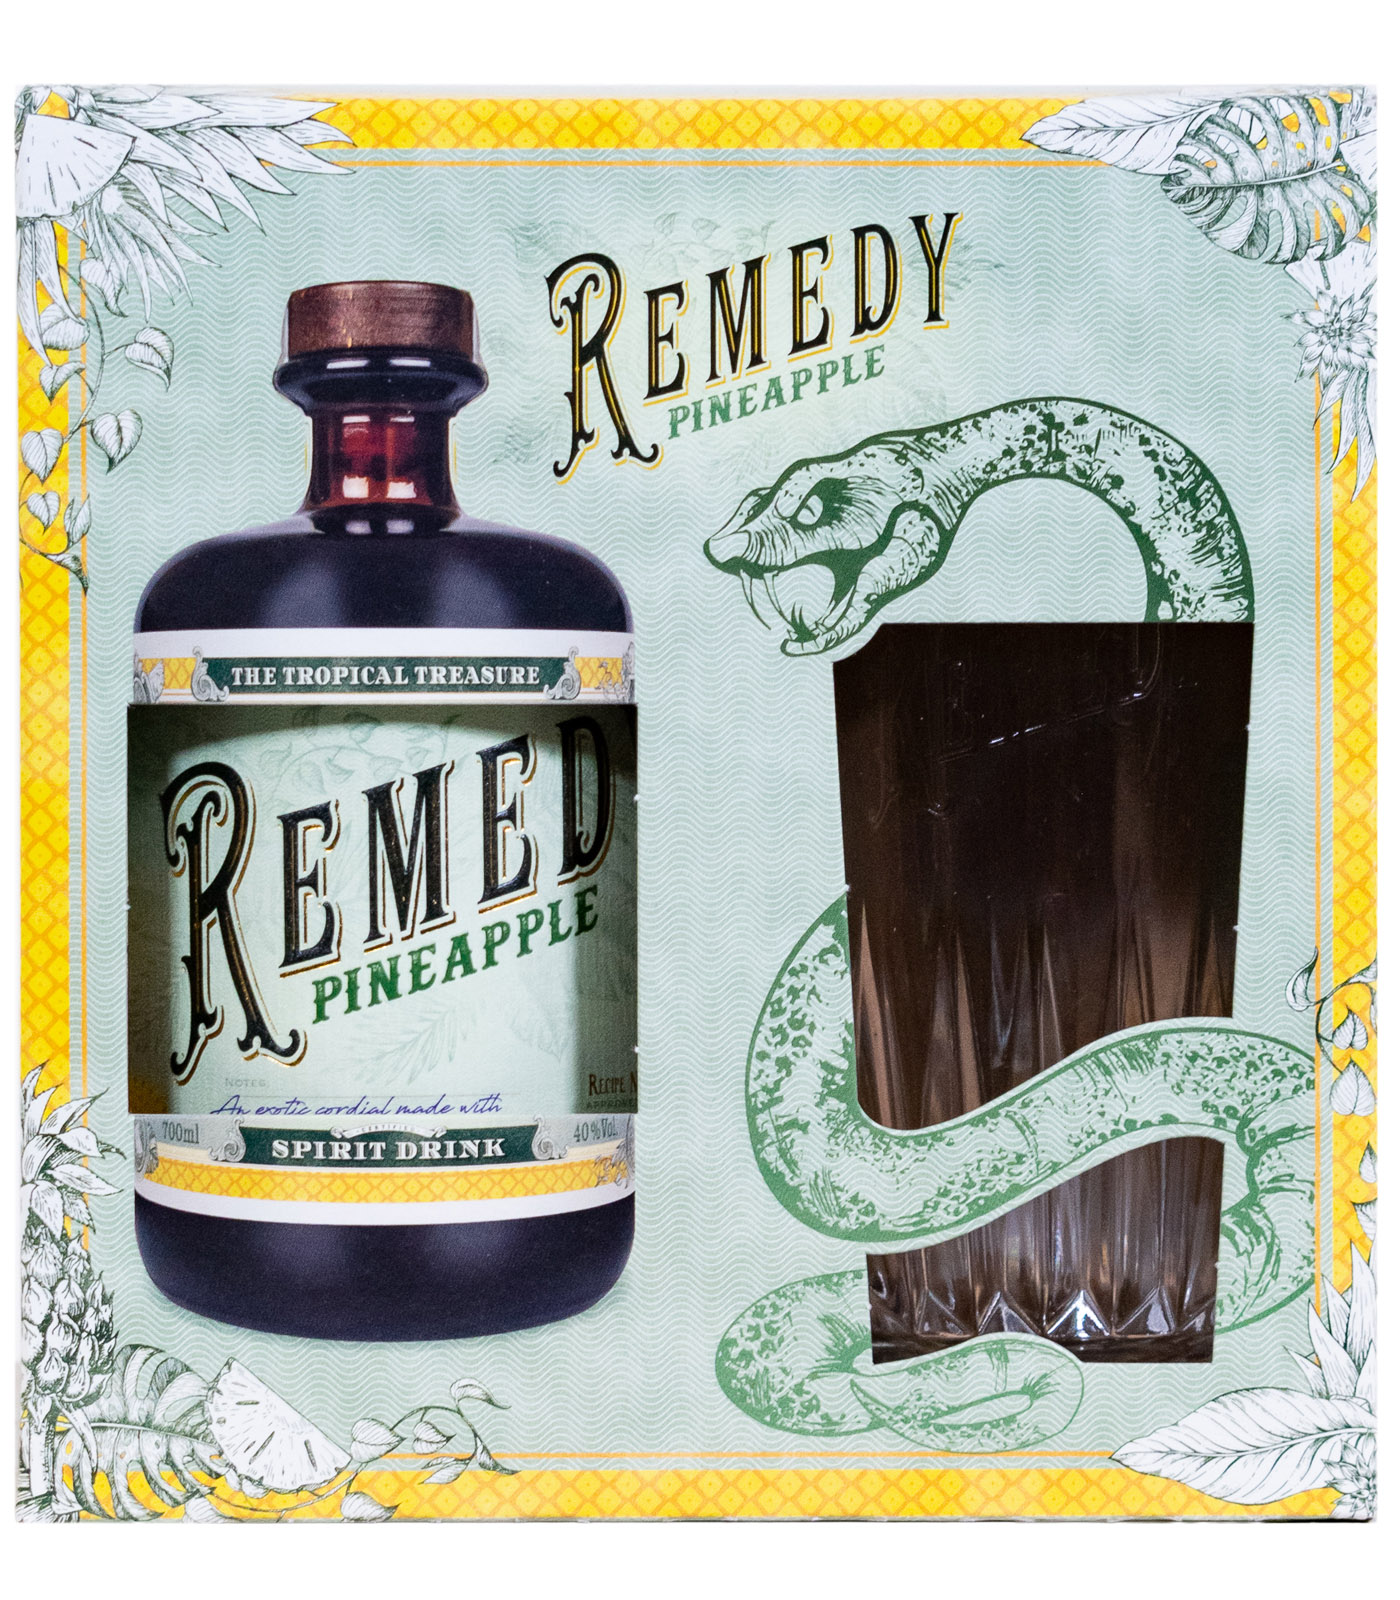 Remedy Pineapple + Glas günstig kaufen